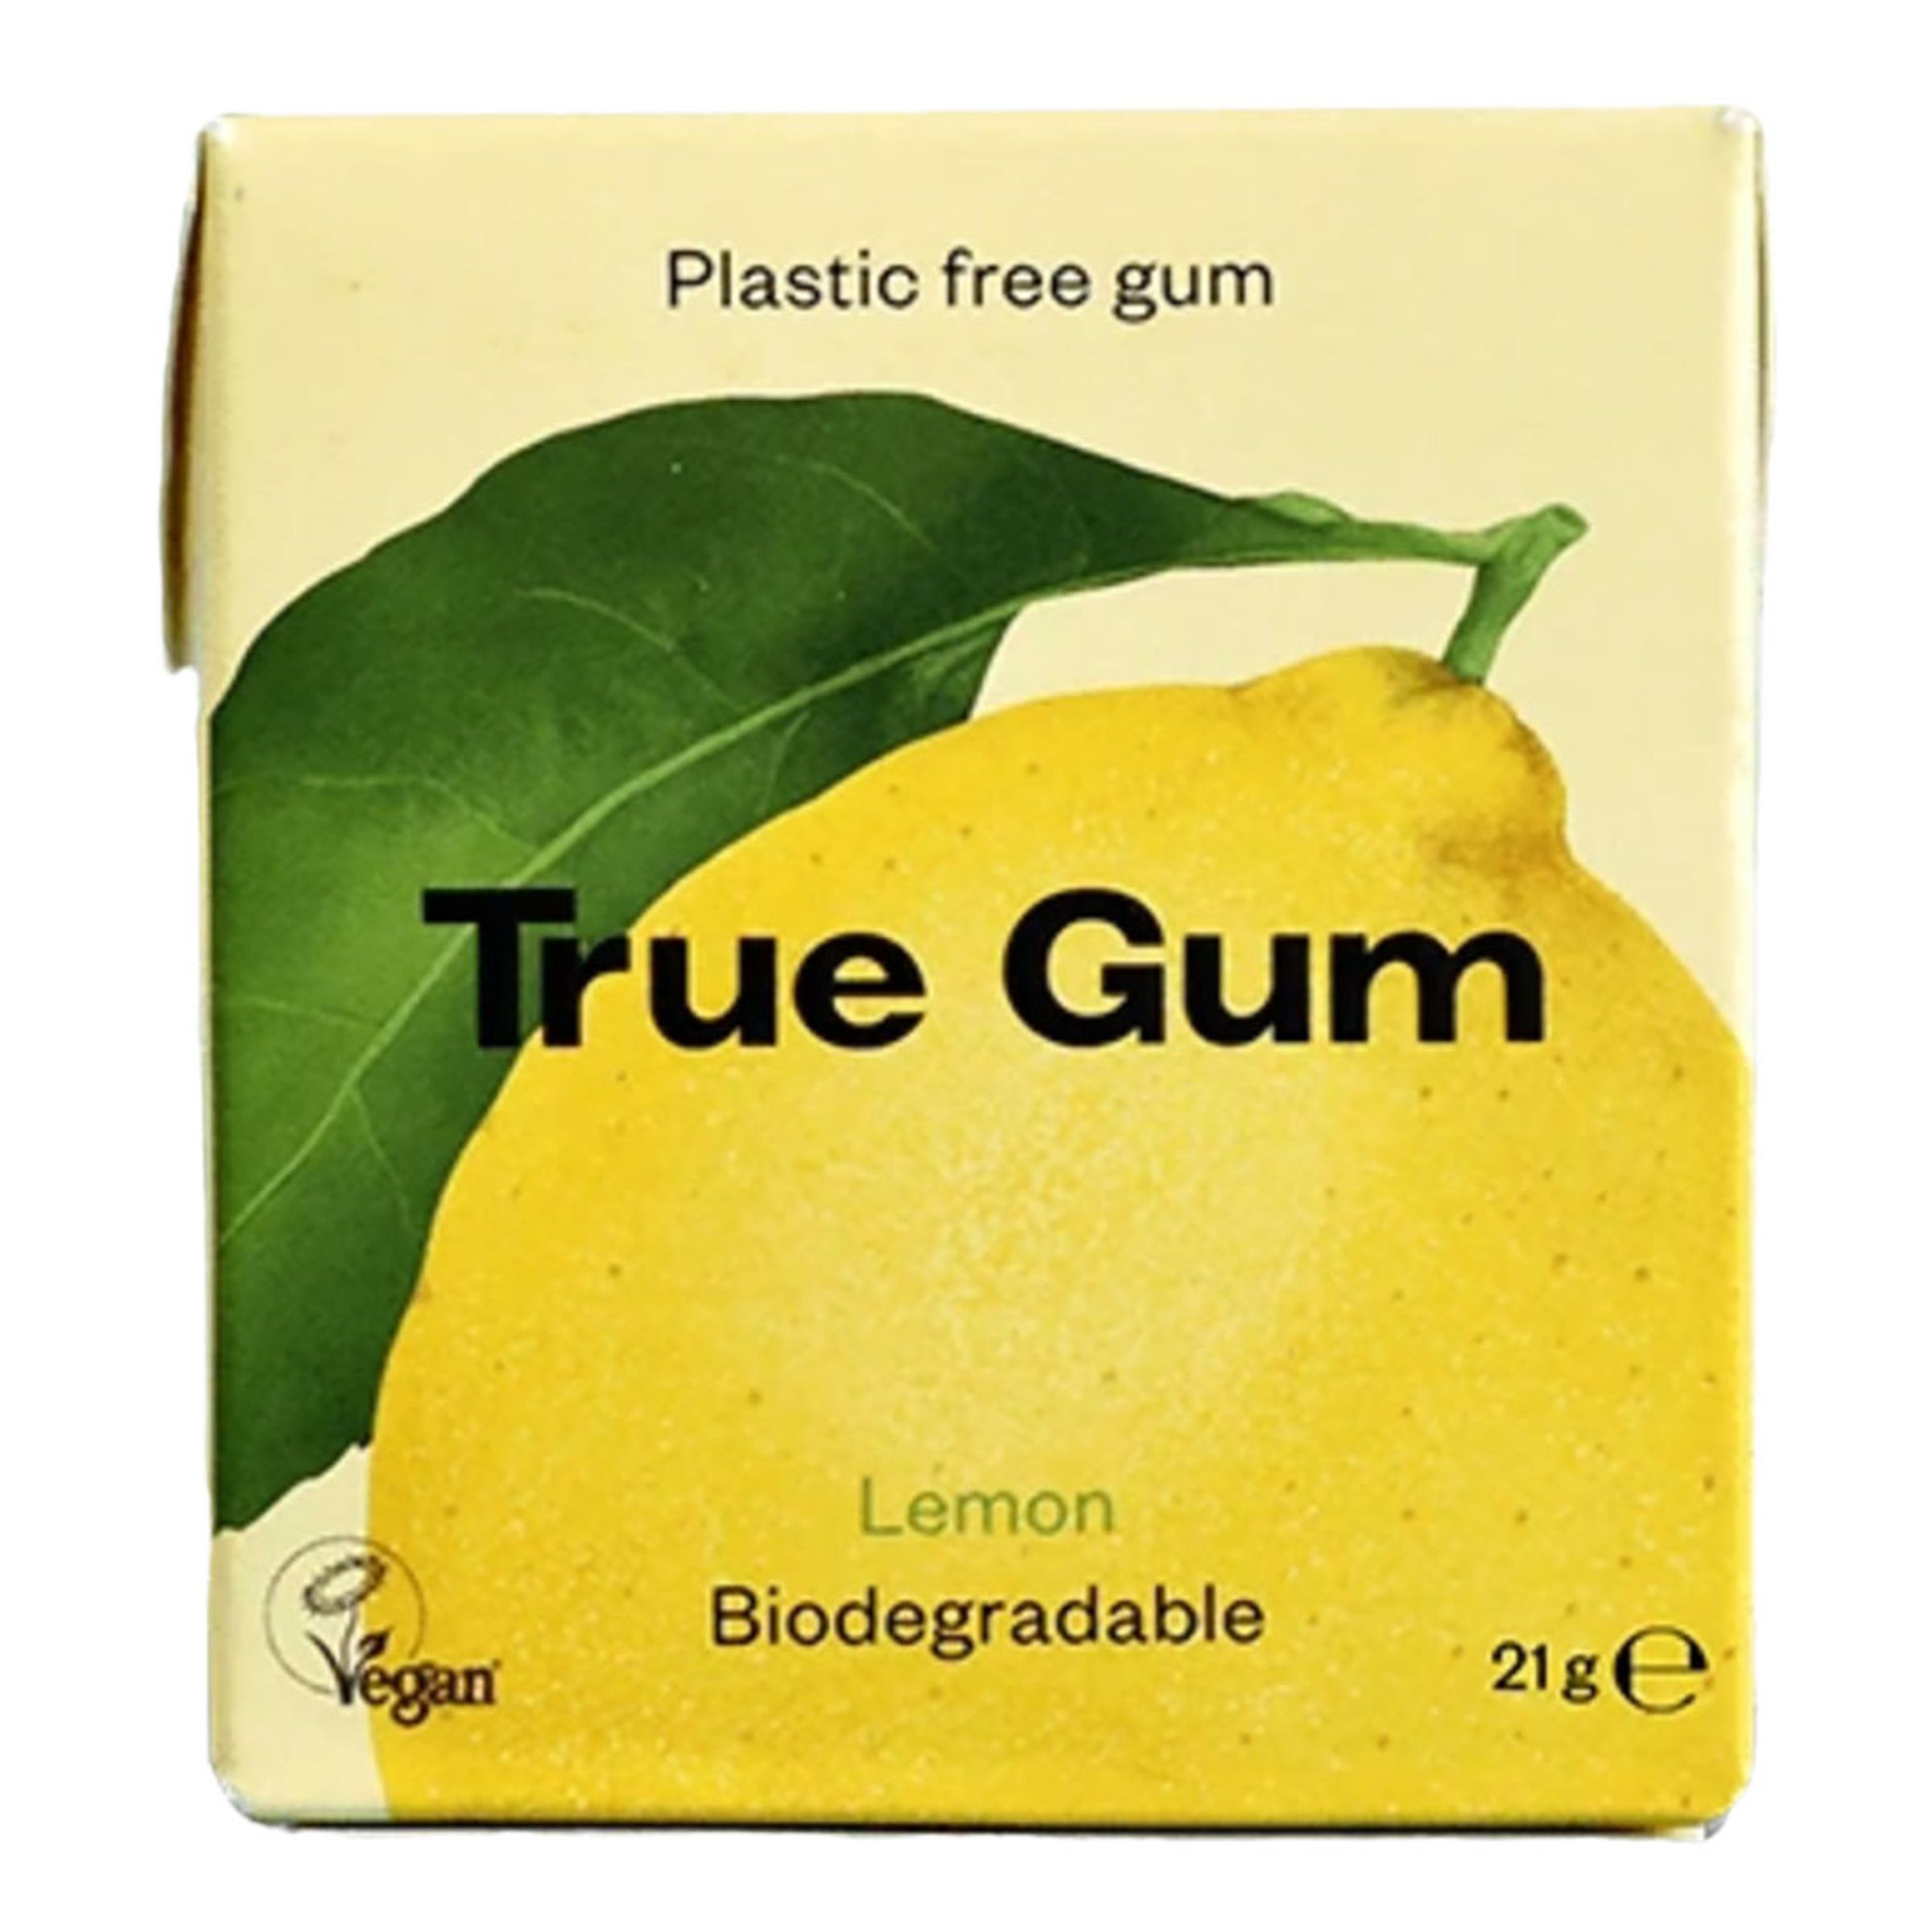 True Gum Lemon - 21 gram